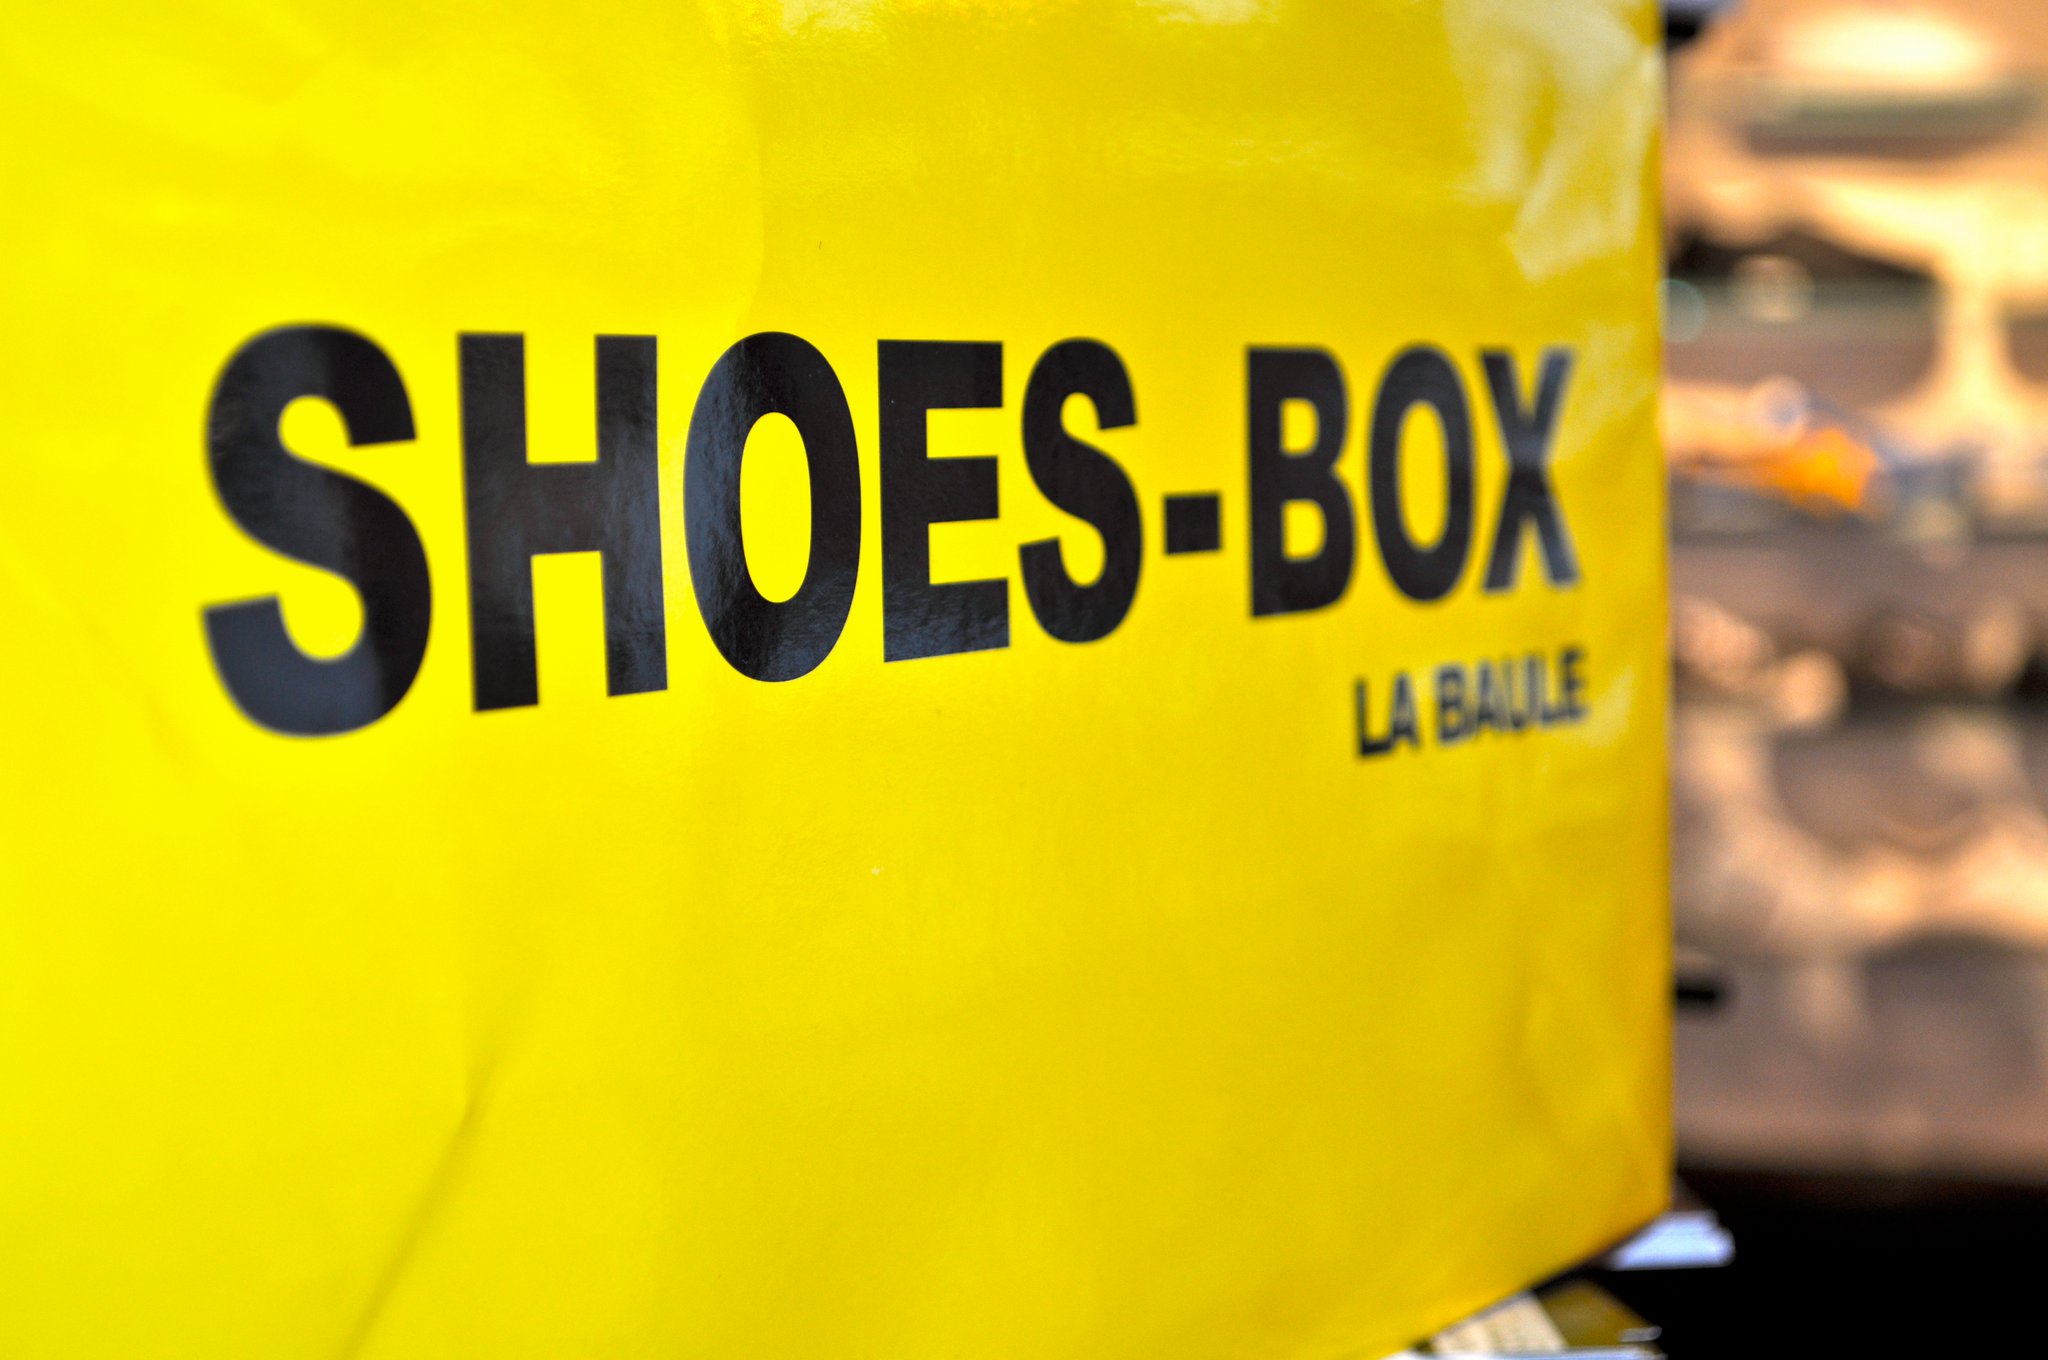 shoes box boutique chaussures la baule